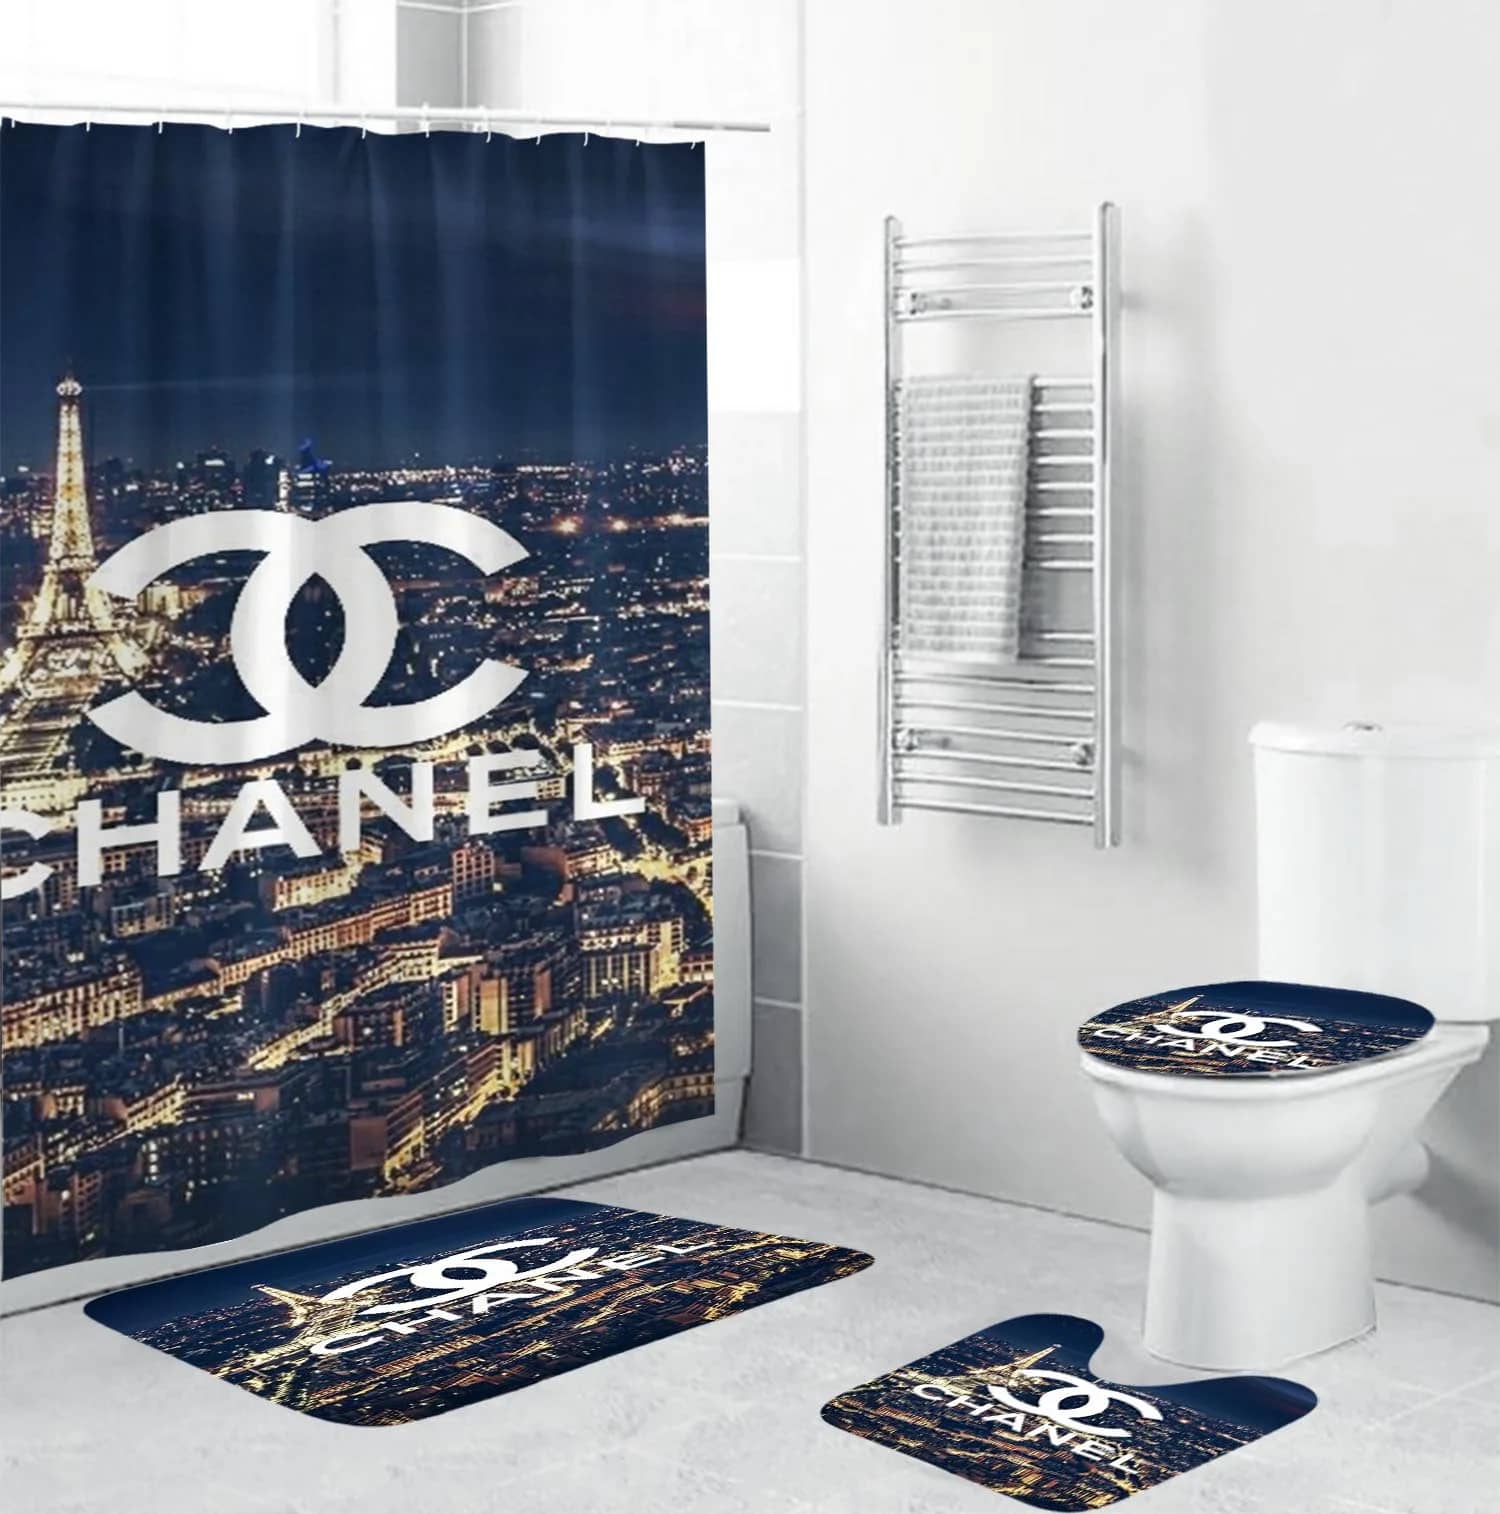 Chanel Logo In Paris Scence Bathroom Sets